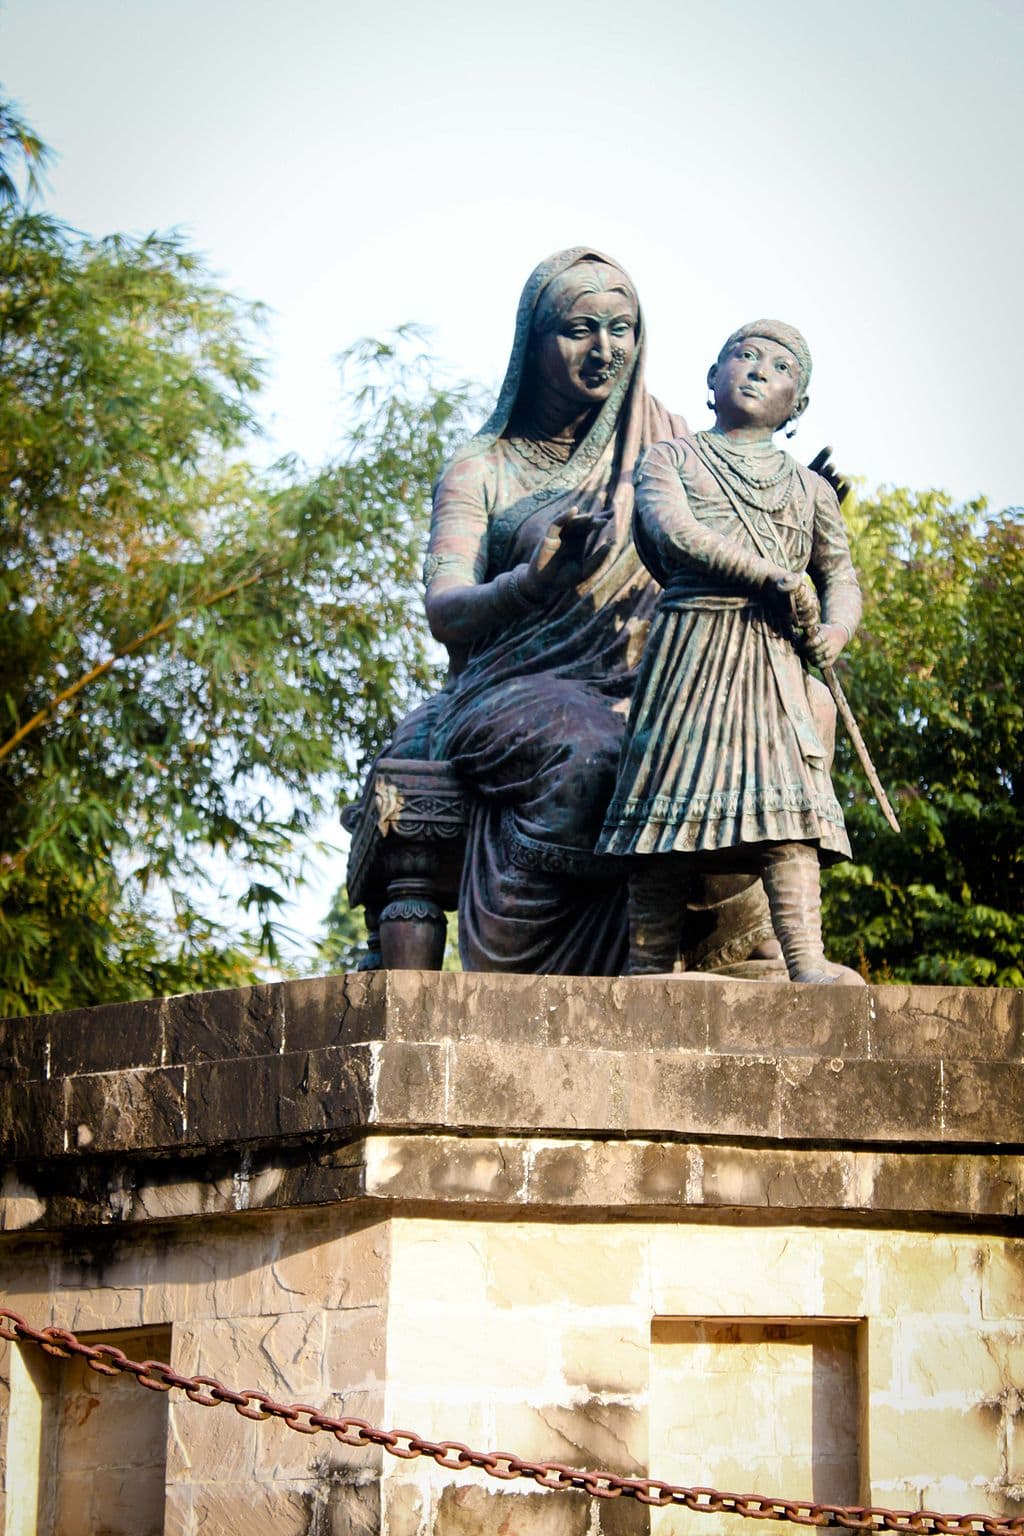 Rajmata Jijau – The Reason behind Origin of Swarajya